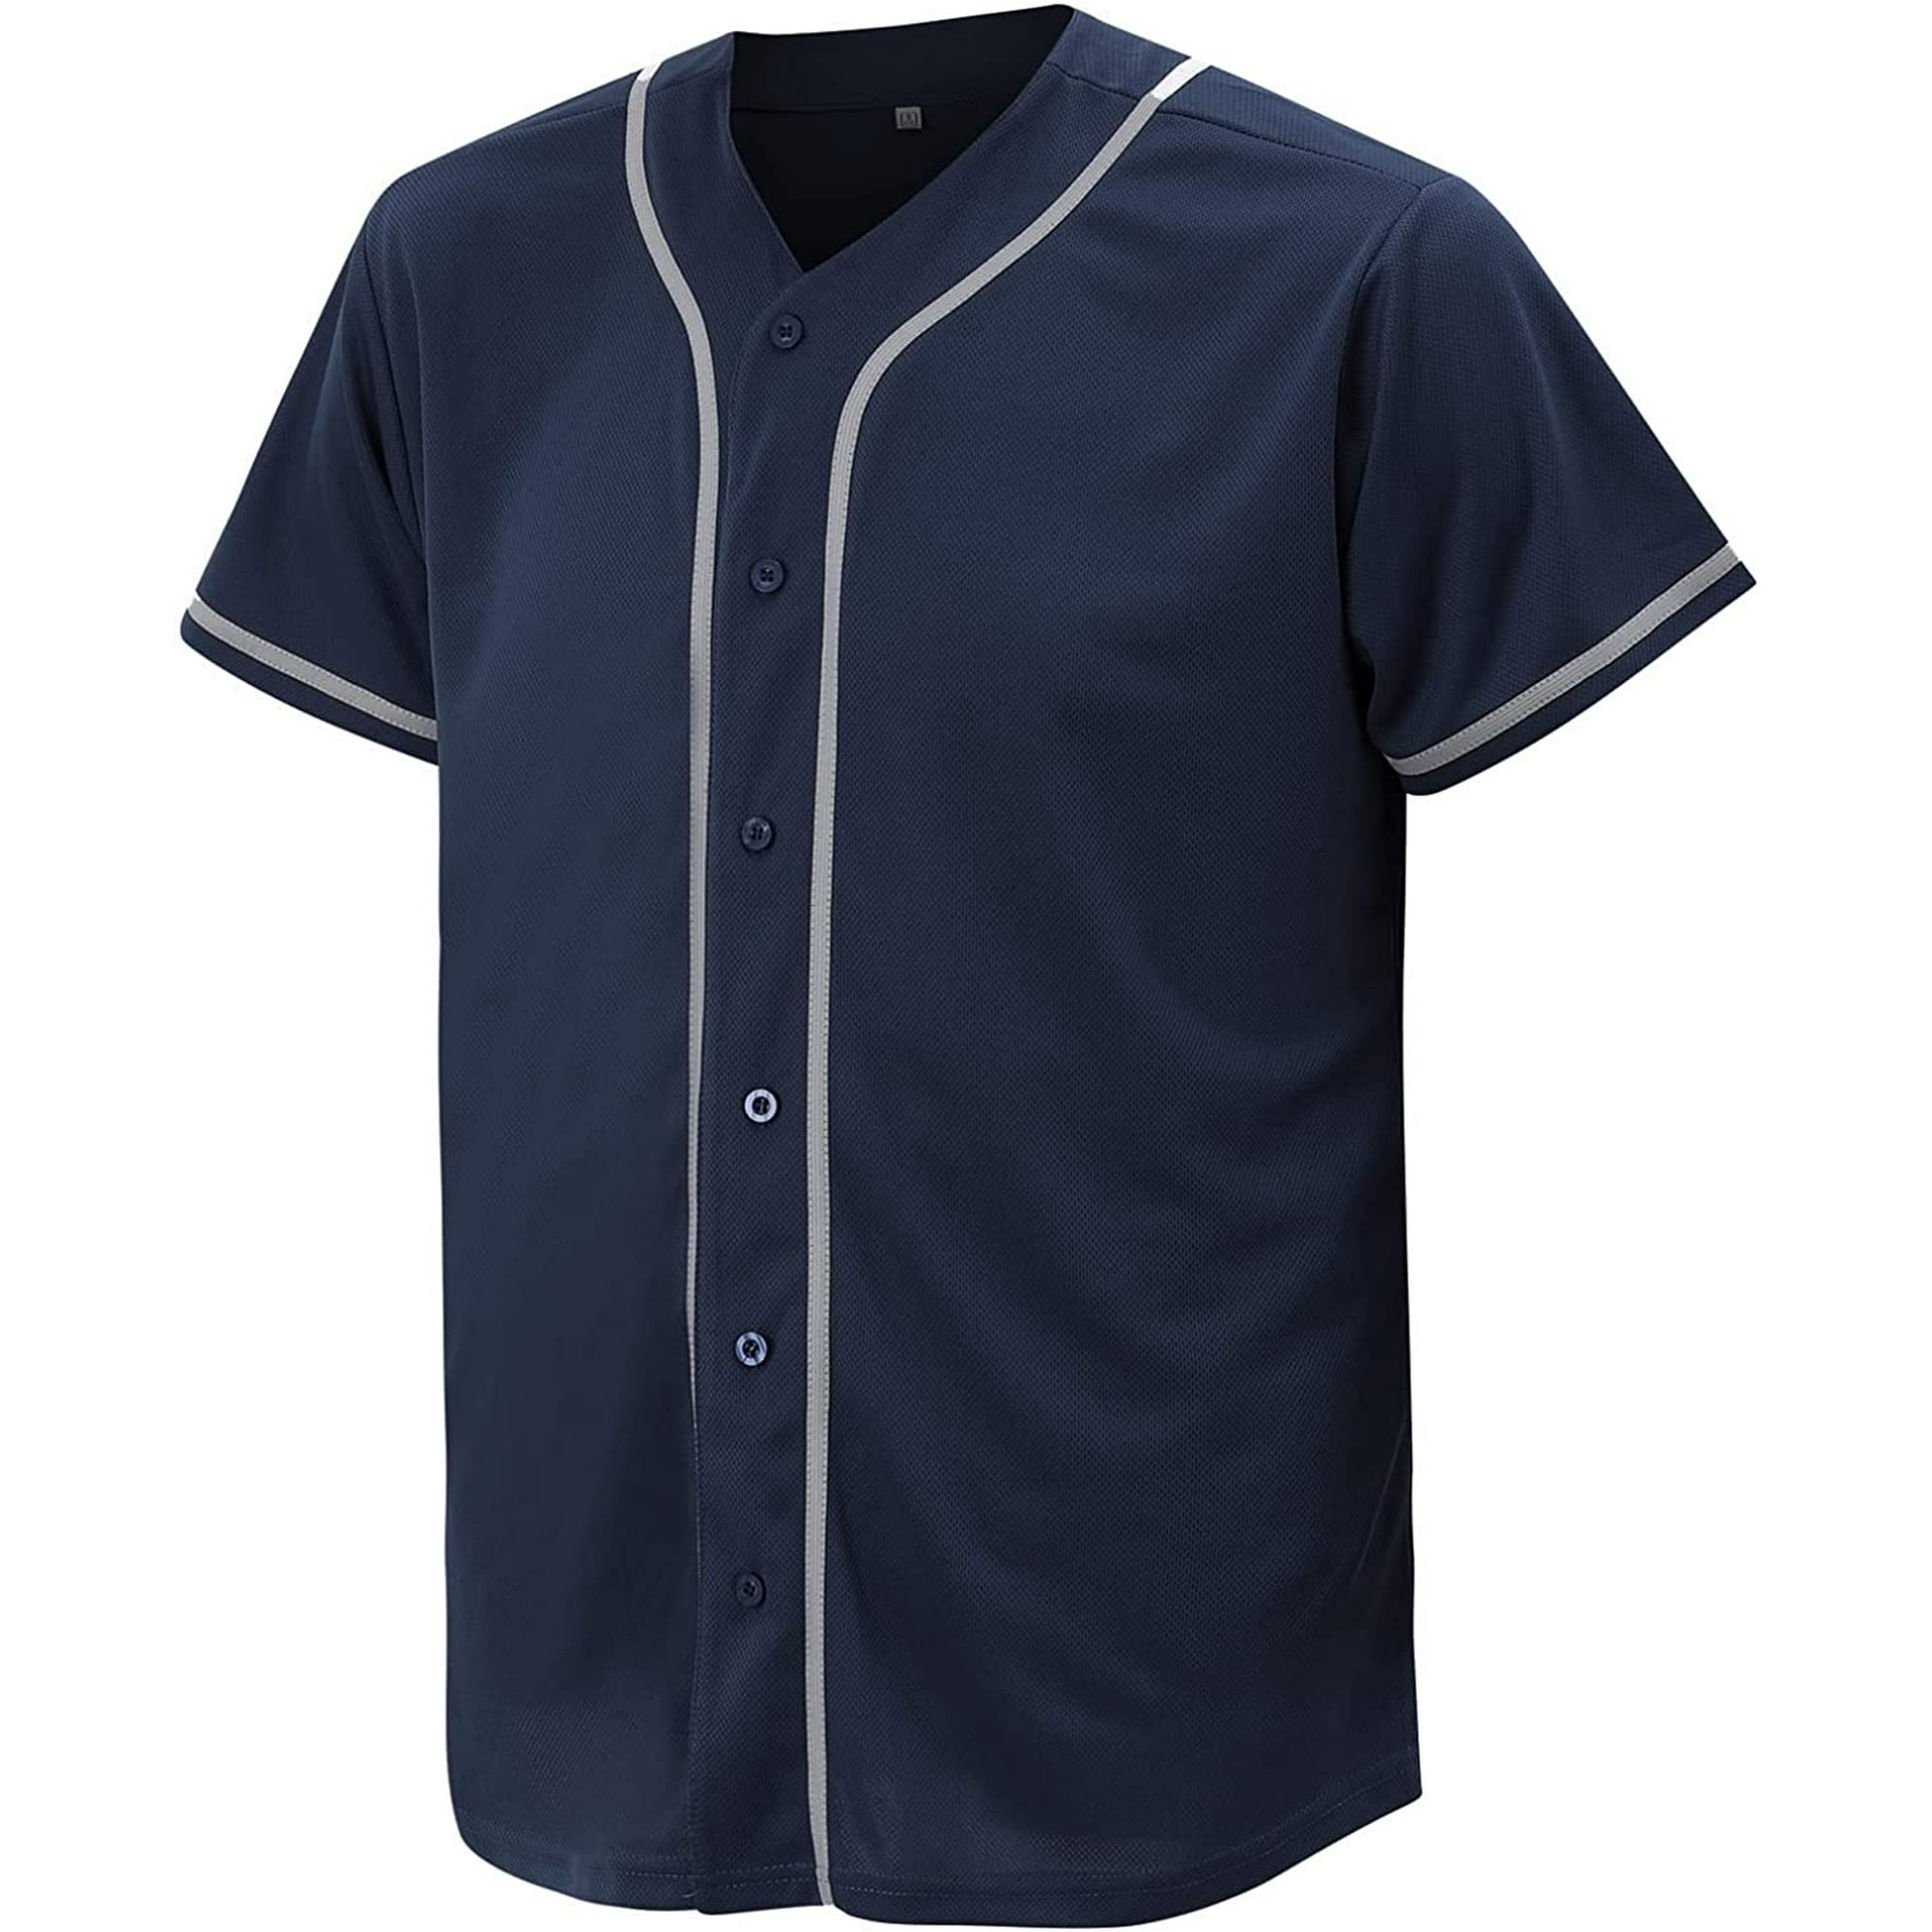 CUTHBERT Solid Baseball Jersey Shirt for Men and Women, Plain Short Sleeves  Button Down T-Shirt 